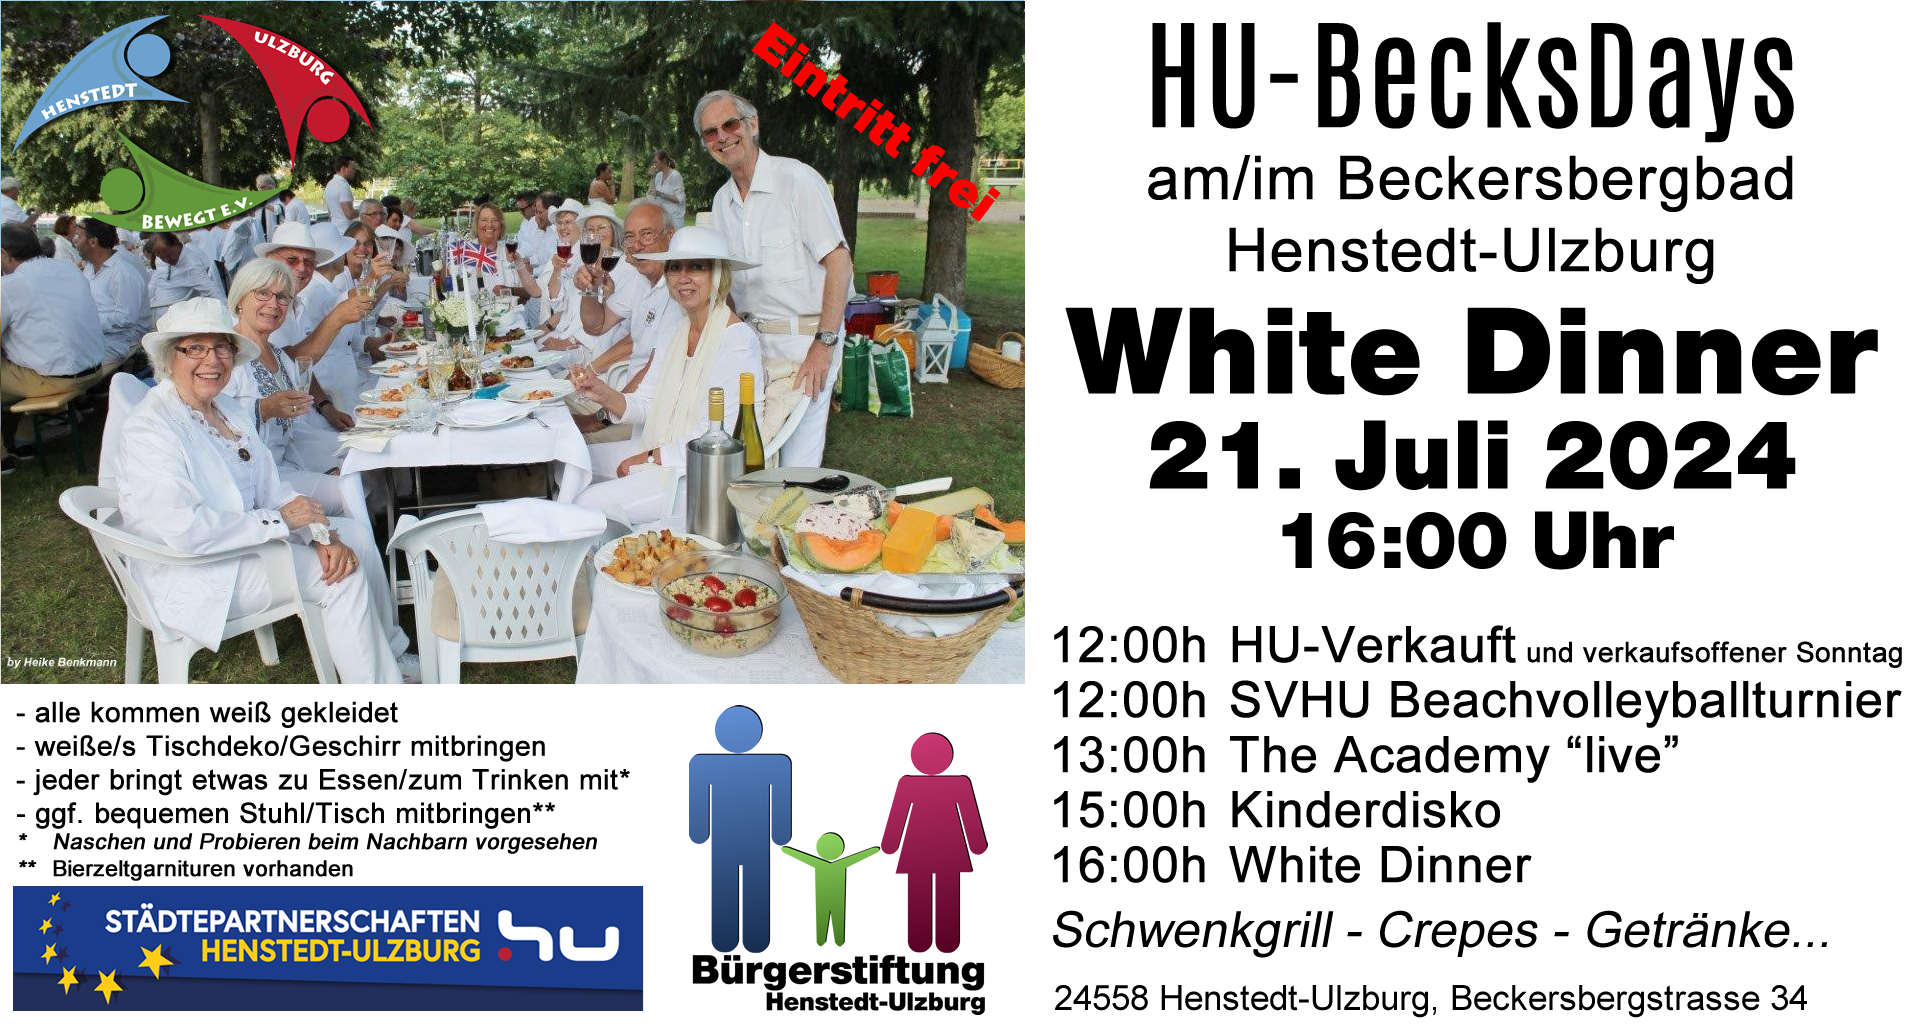 HU-BecksDays - White Dinner von 16-18 Uhr am 21.07.2024